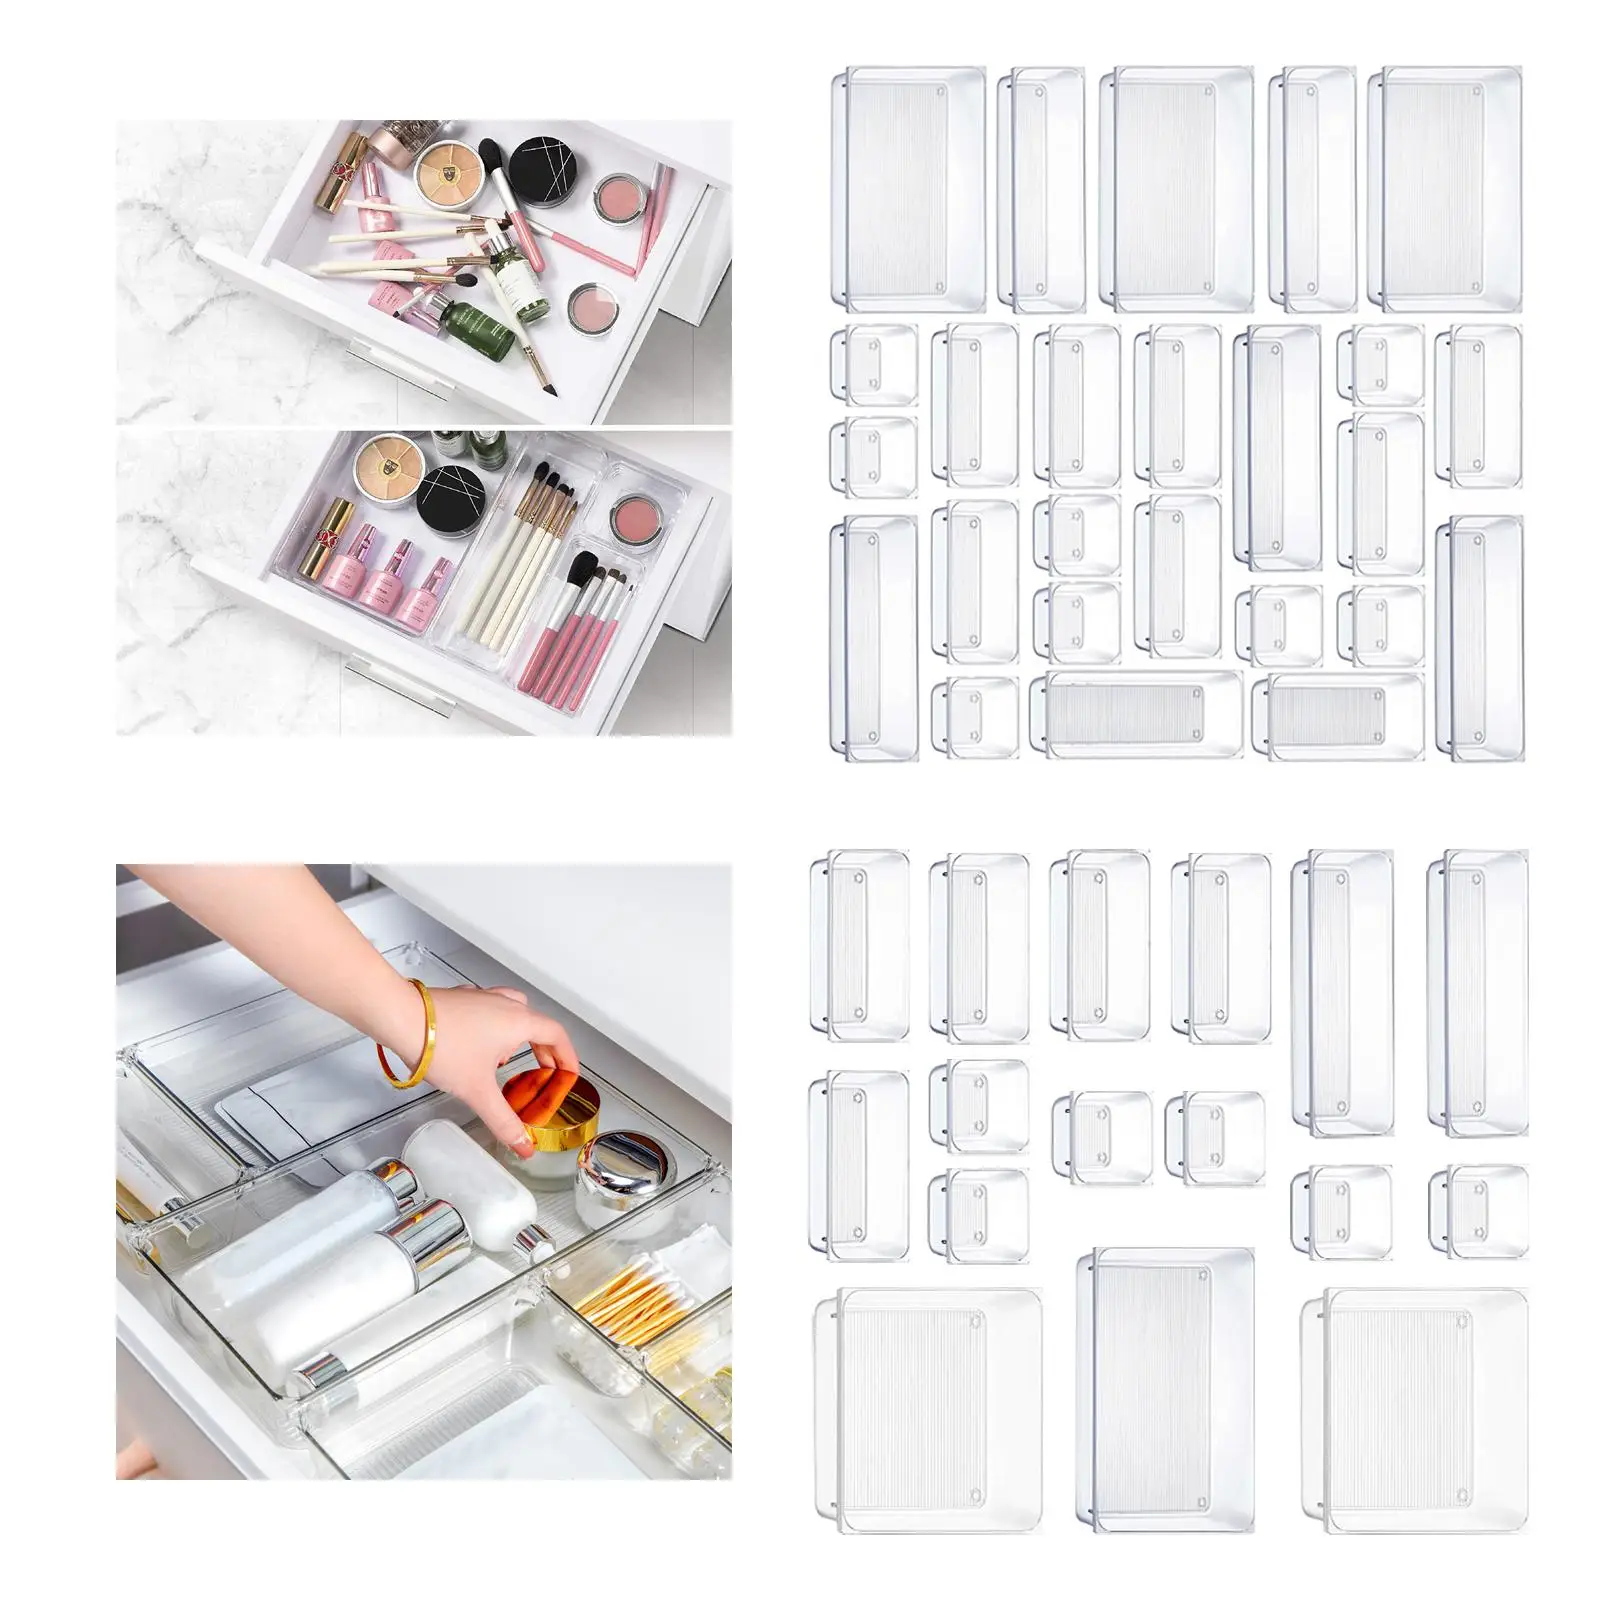 Versatile Desk Drawer Organizer Divider Container Transparent Drawer Organizers Set for Kitchen Utensils Bathroom